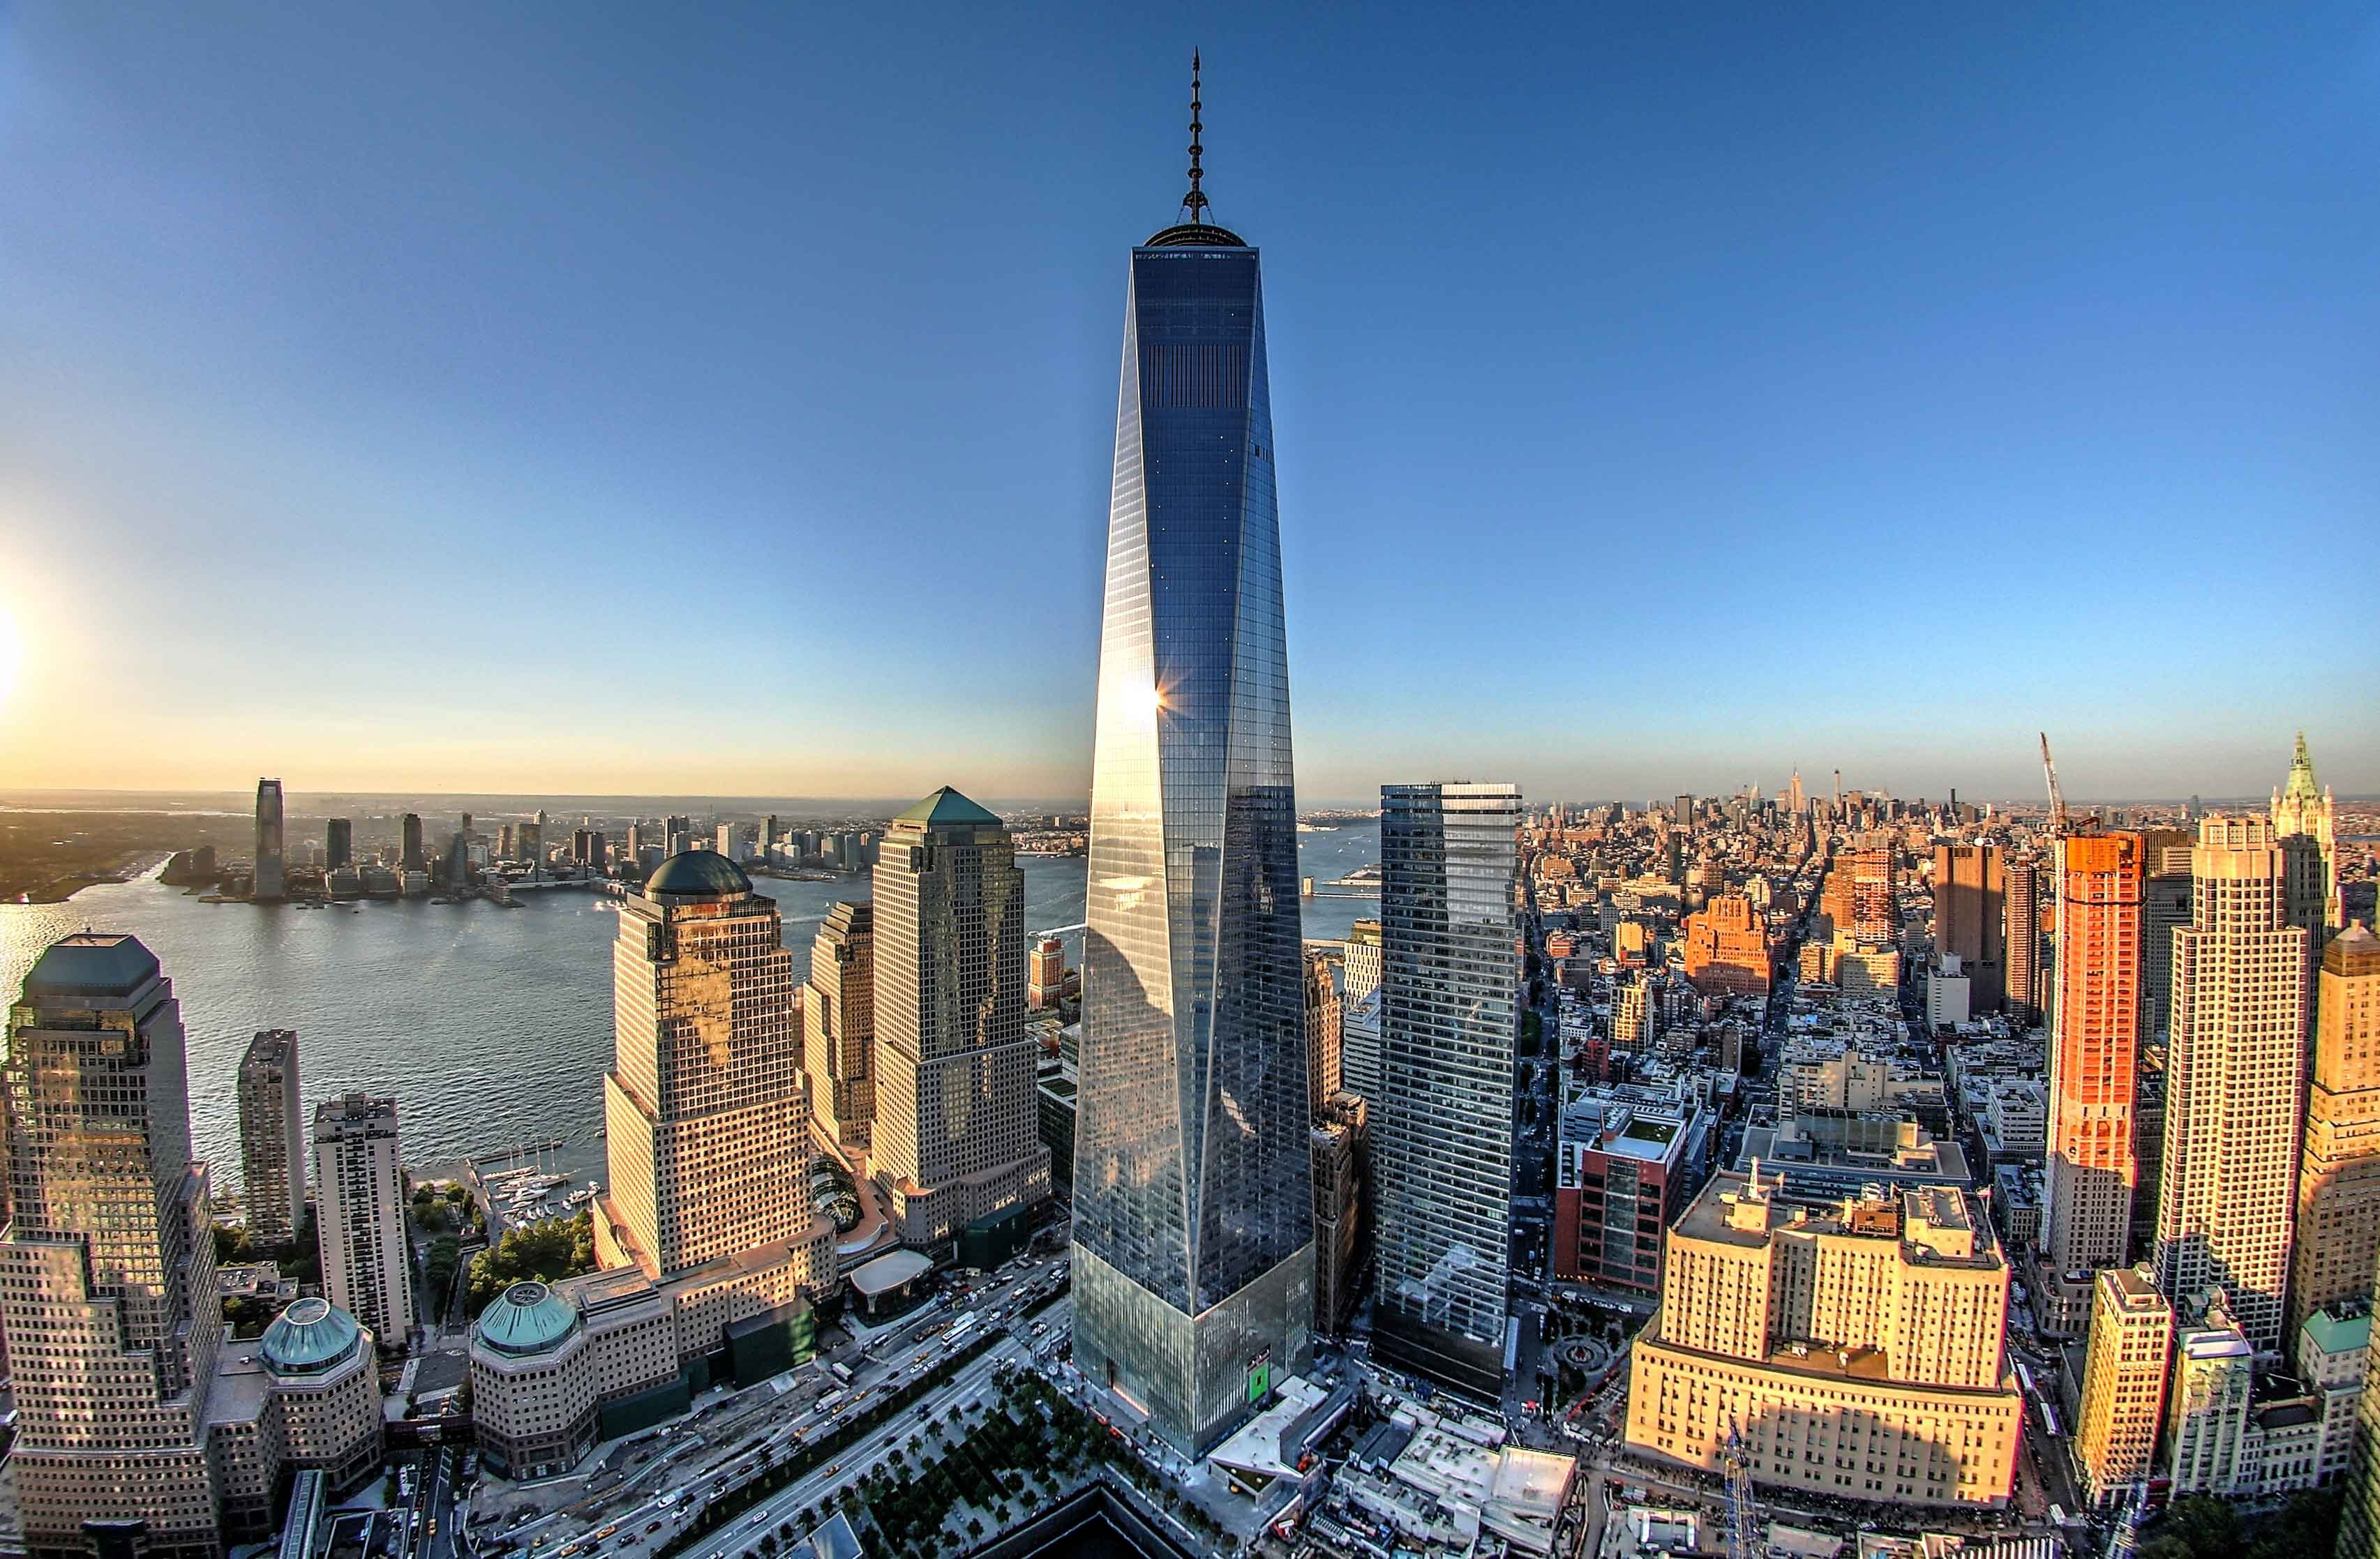 Какой город всемирно известен. Башни ВТЦ В Нью-Йорке. ВТЦ 1 башня свободы. One World trade Center, Нью-Йорк. Всемирный торговый центр 1 (541 м). Нью-Йорк, США.